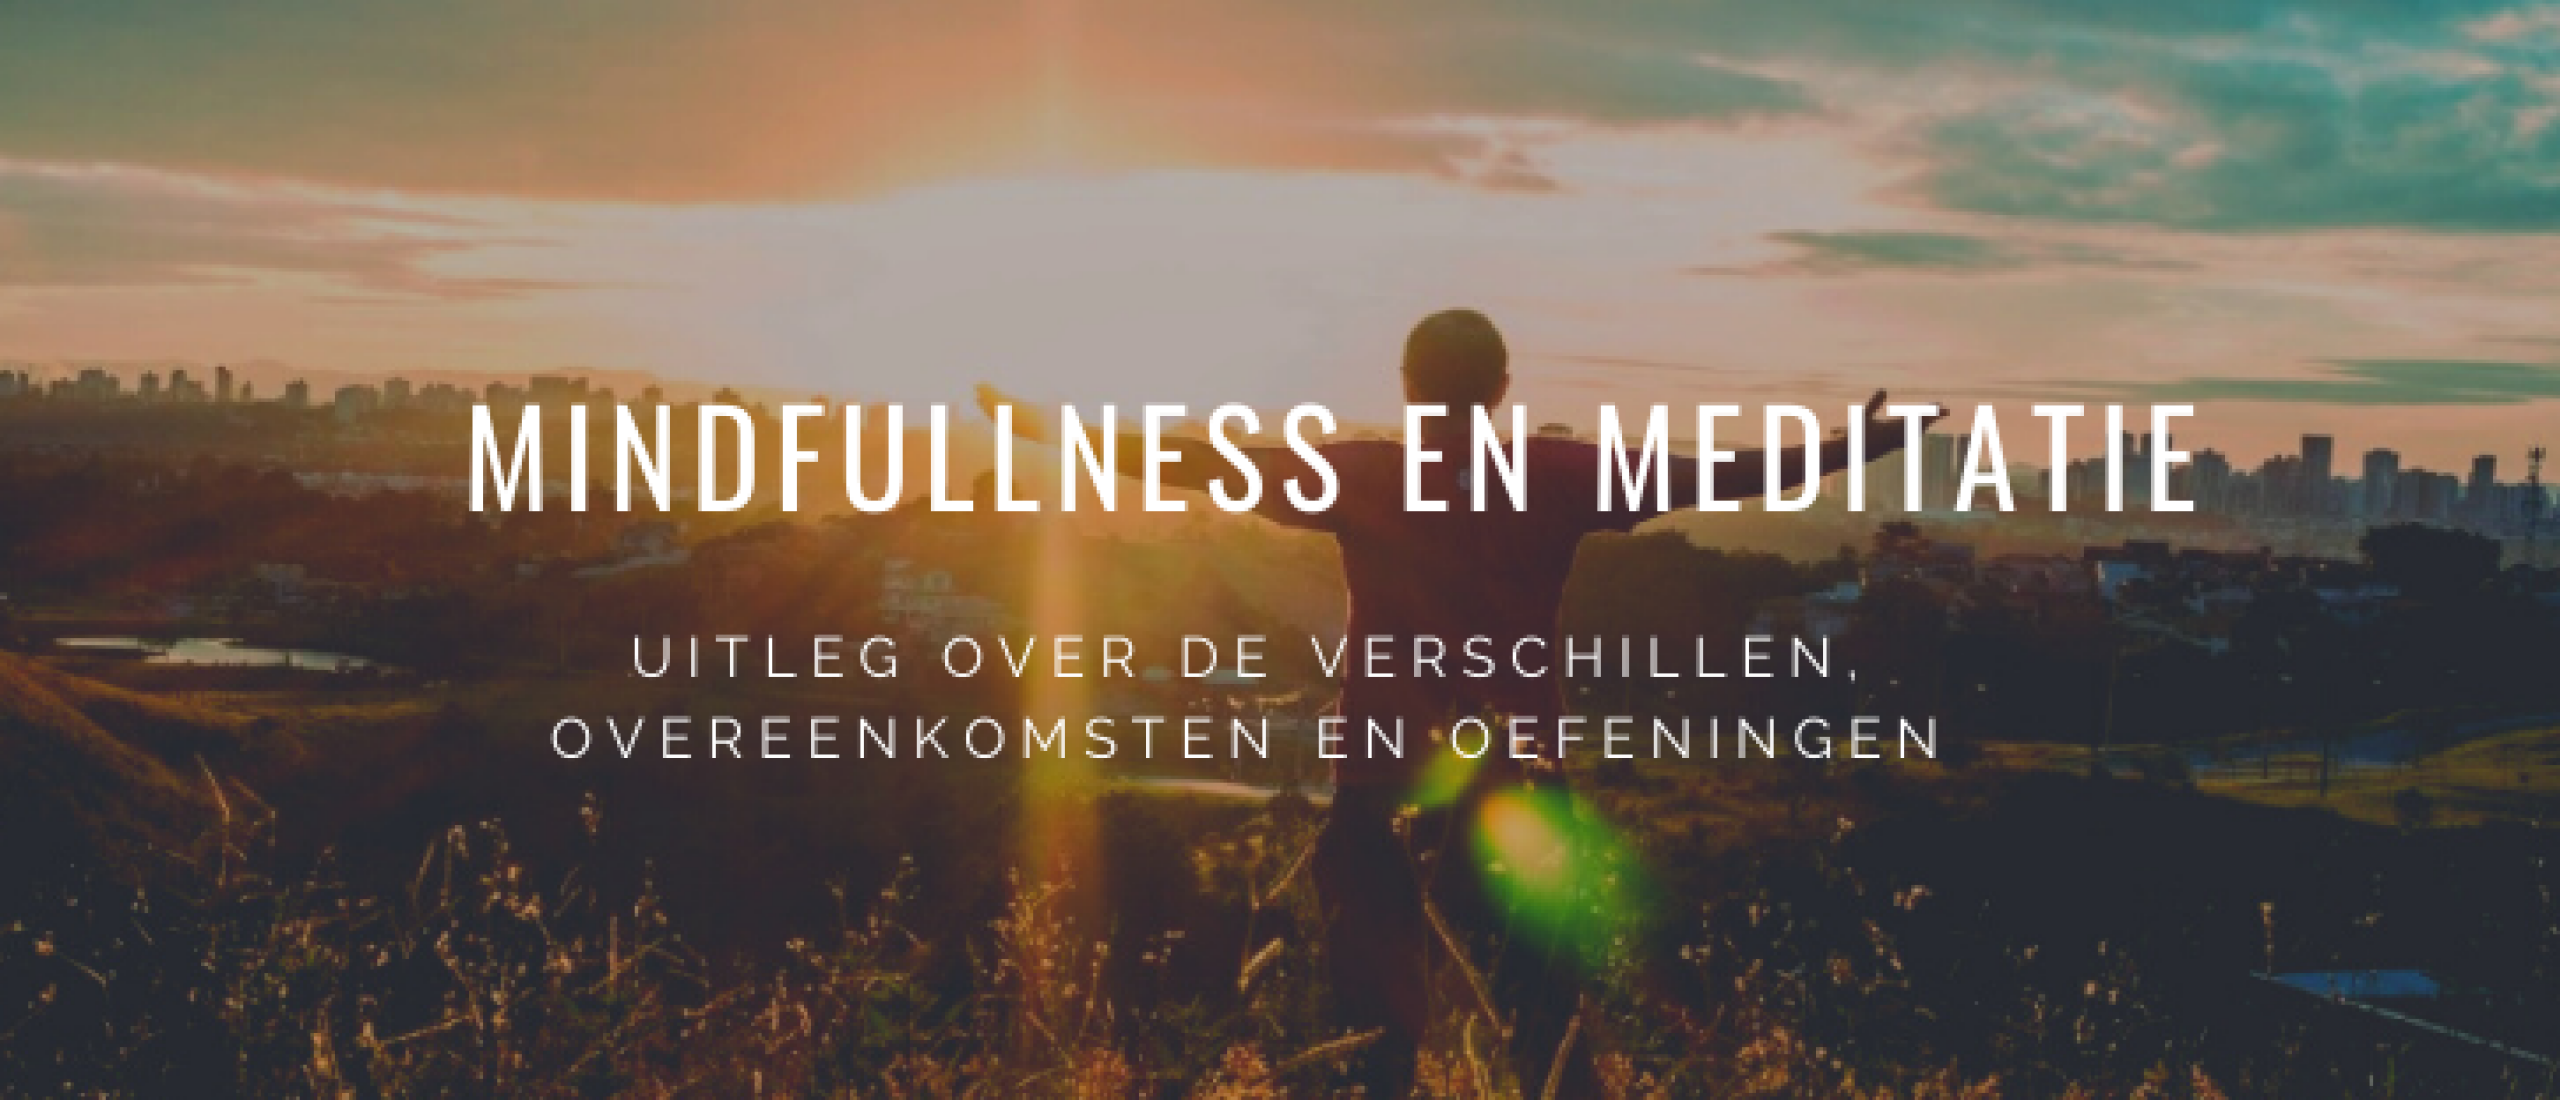 Mindfulness en Meditatie: Verschillen + Gratis Oefeningen Thuis